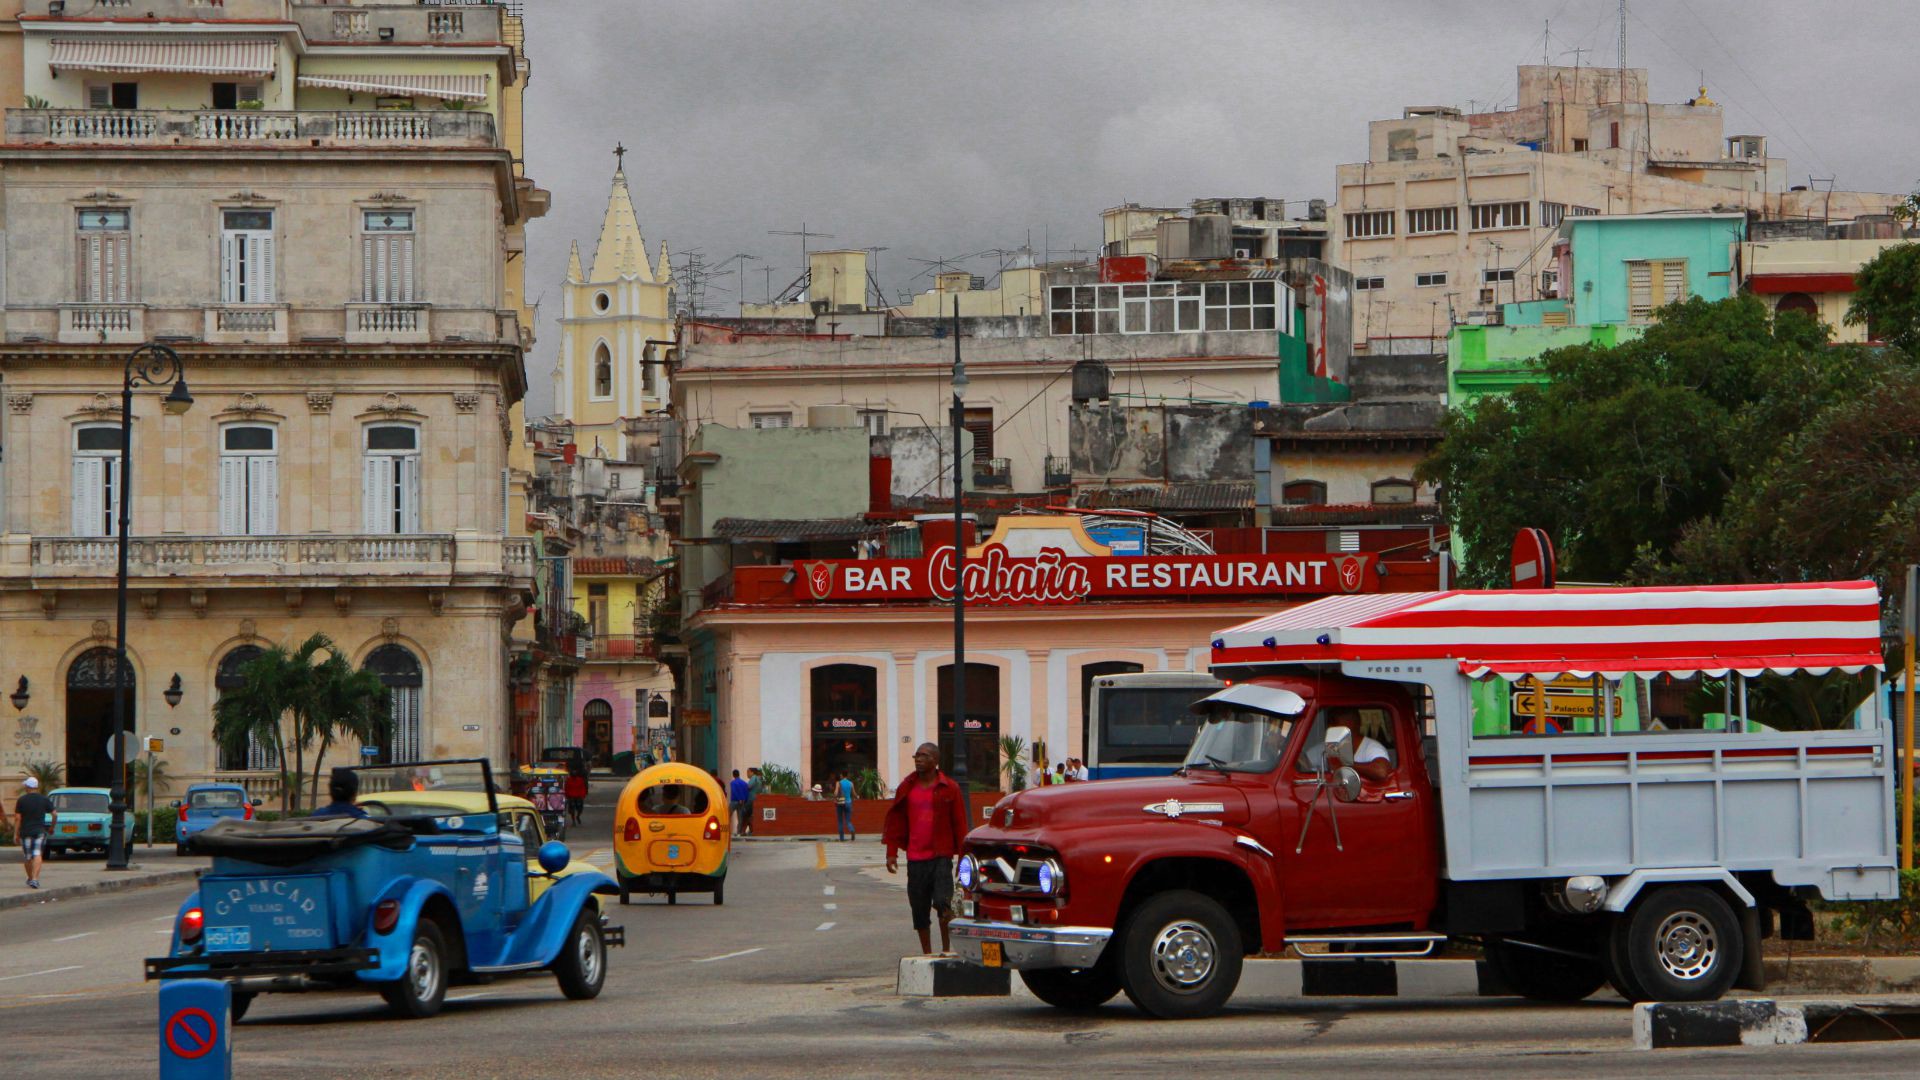 Le pape François s'est rendu à la Havane et à Santiago de Cuba, du 19 au 22 septembre 2015. (Photo: Flickr/Guillaume Baviere/CC BY 2.0)